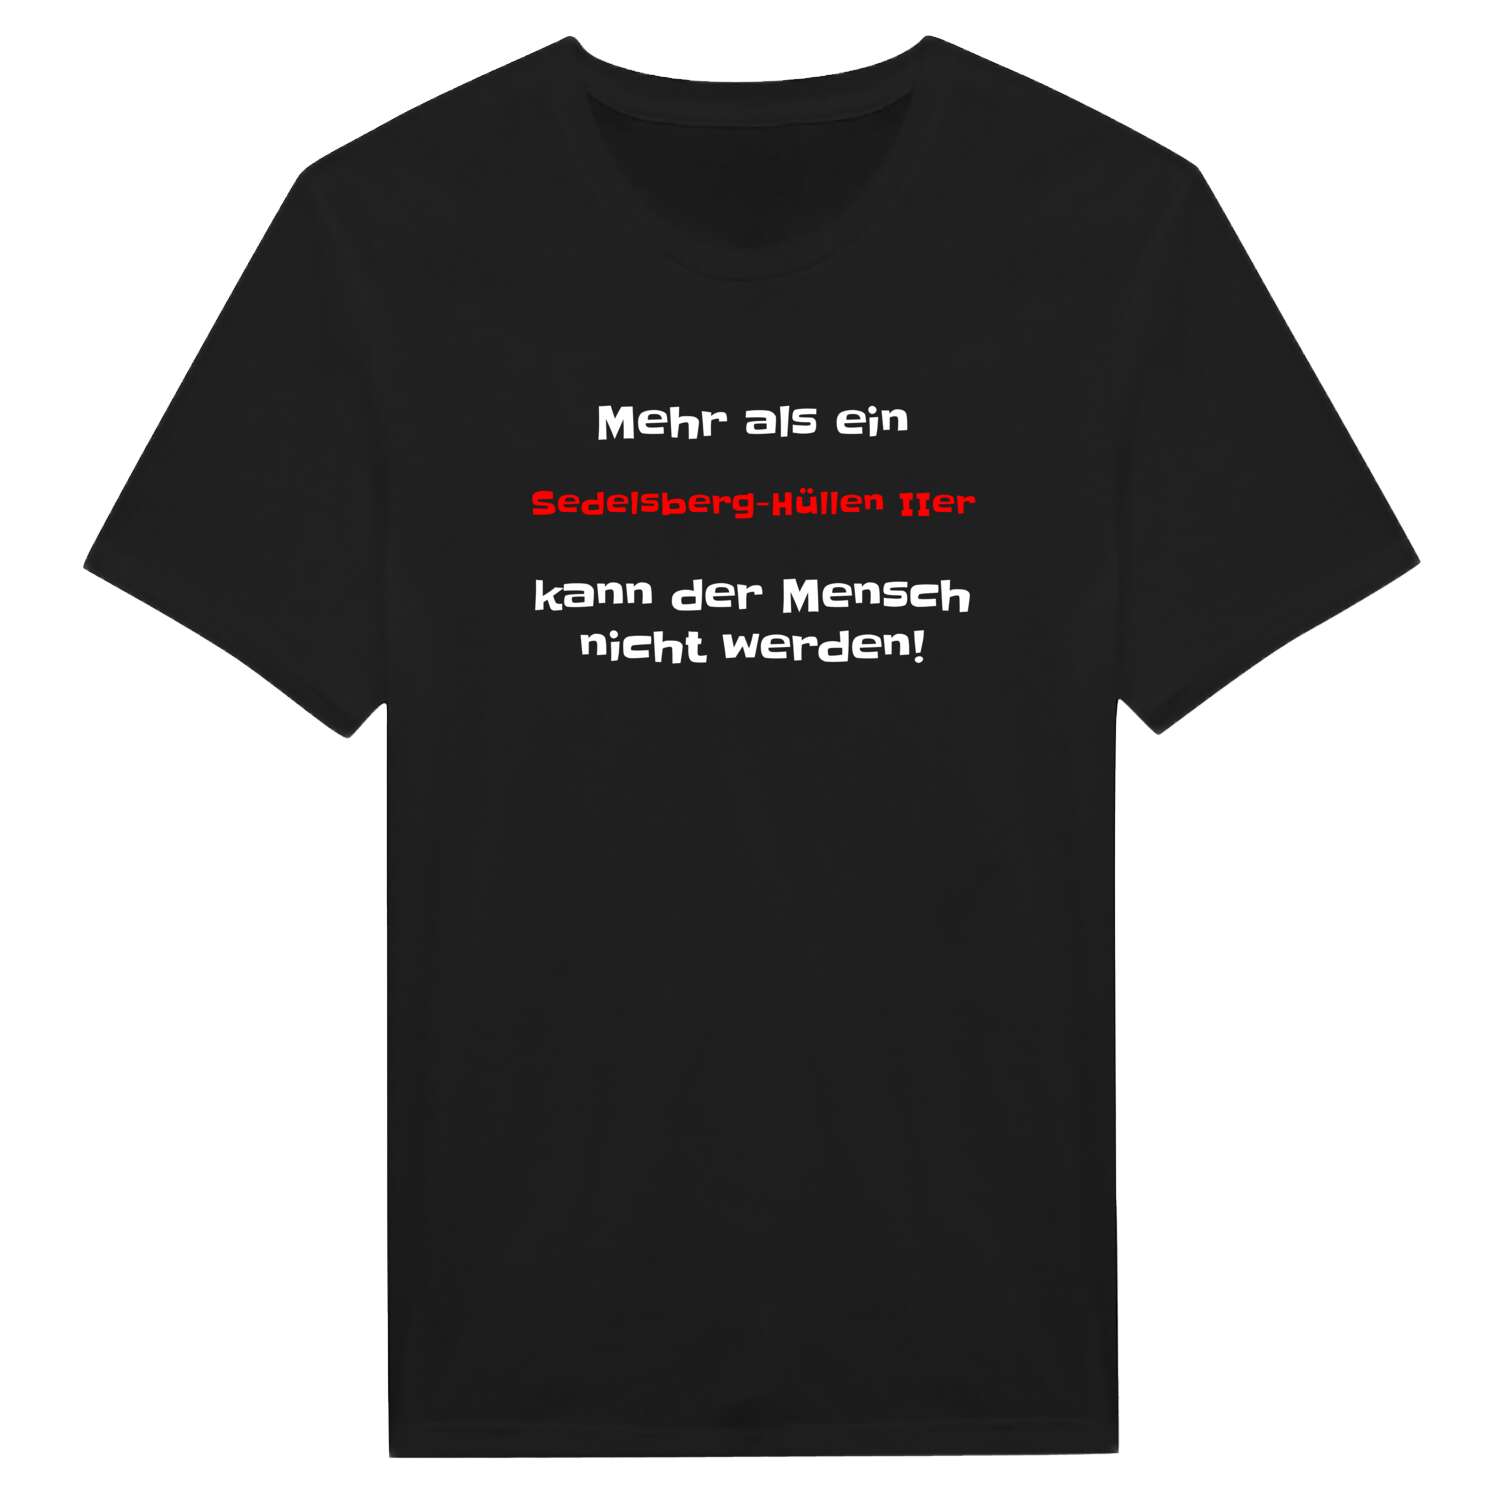 Sedelsberg-Hüllen II T-Shirt »Mehr als ein«